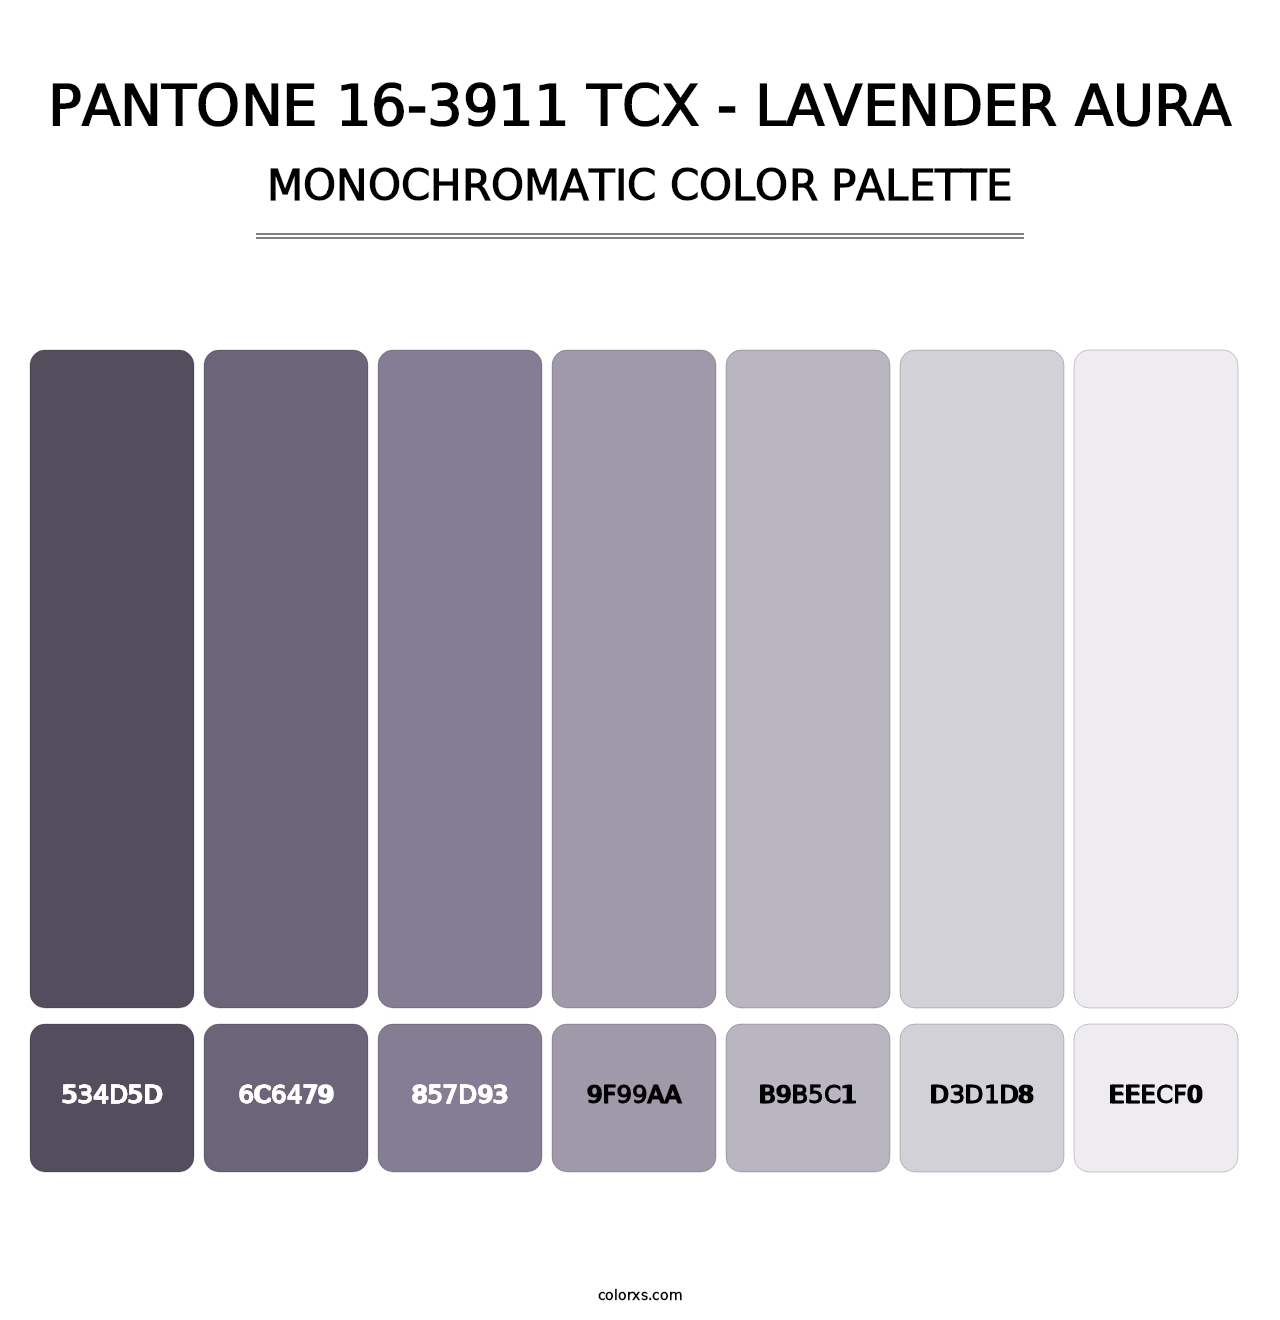 PANTONE 16-3911 TCX - Lavender Aura - Monochromatic Color Palette